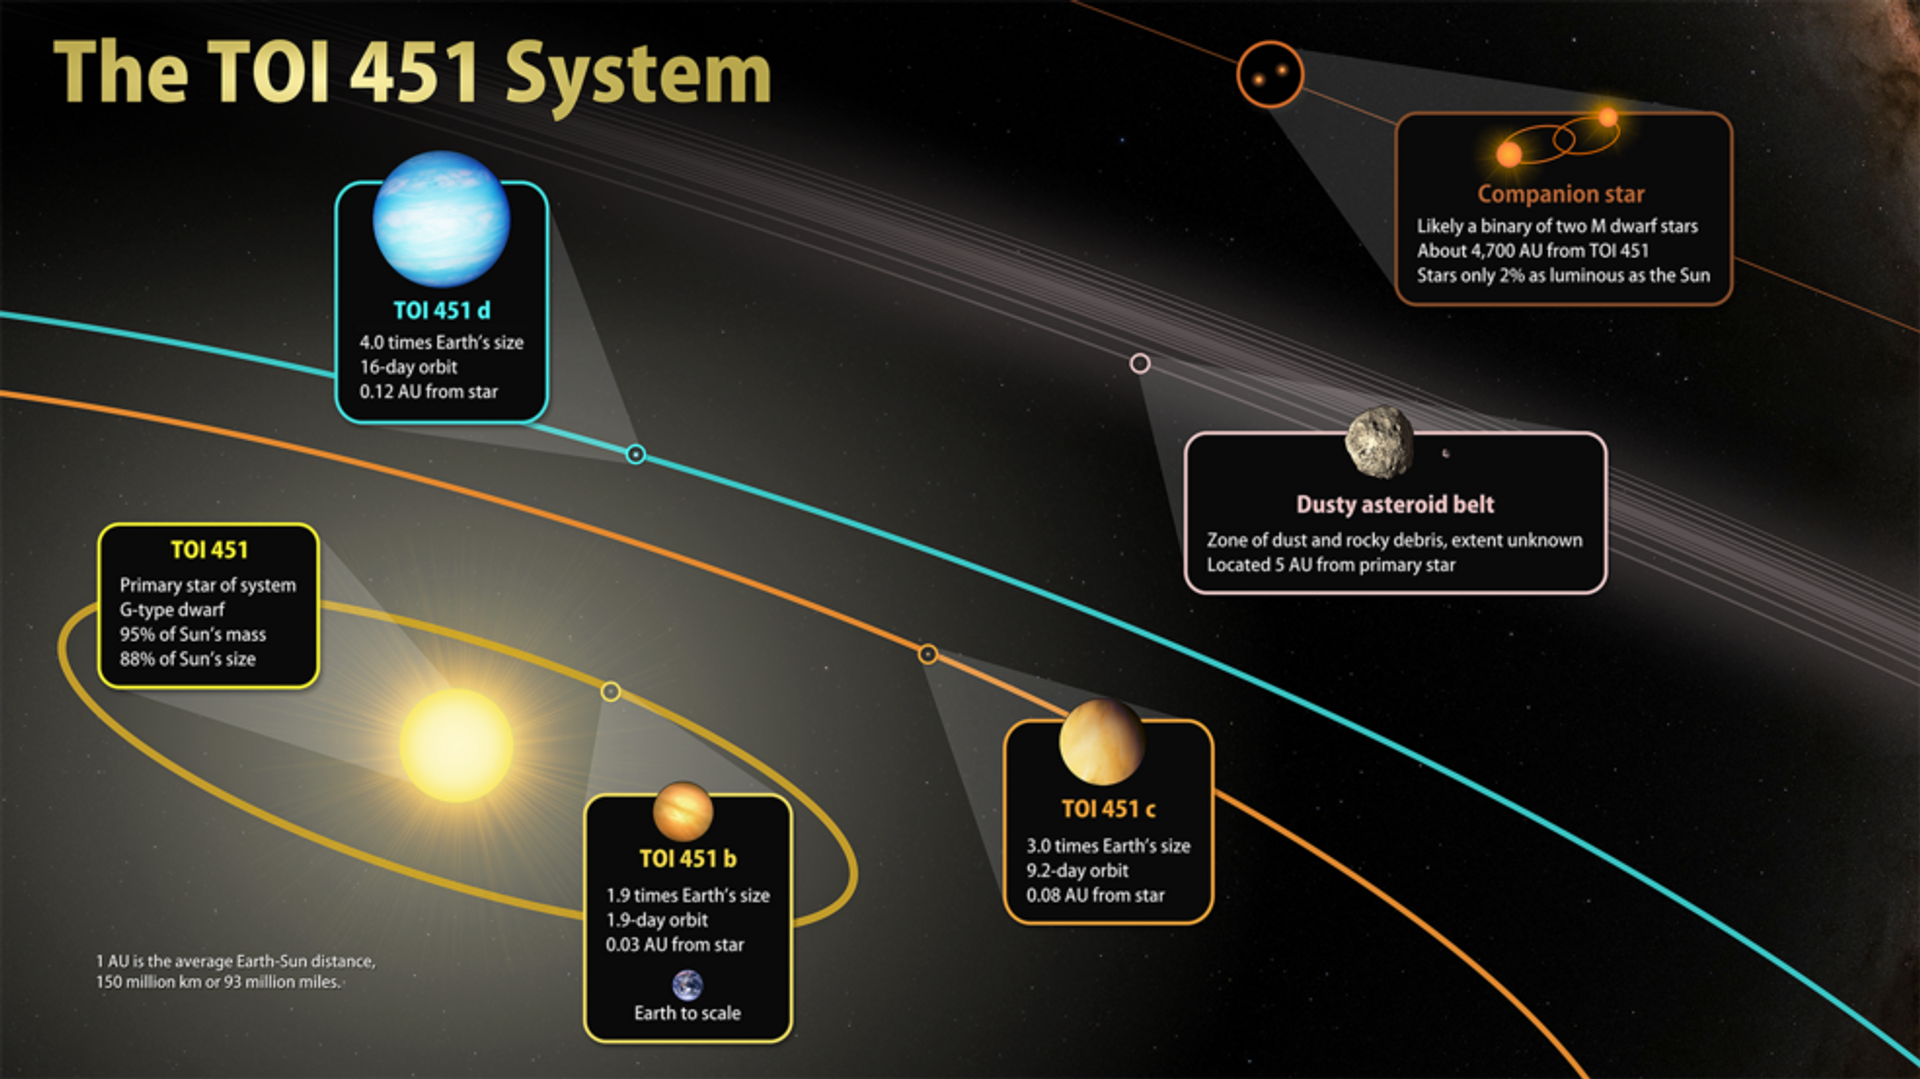 La visualización del sistema TOI 451 con sus exoplanetas - Sputnik Mundo, 1920, 14.02.2021